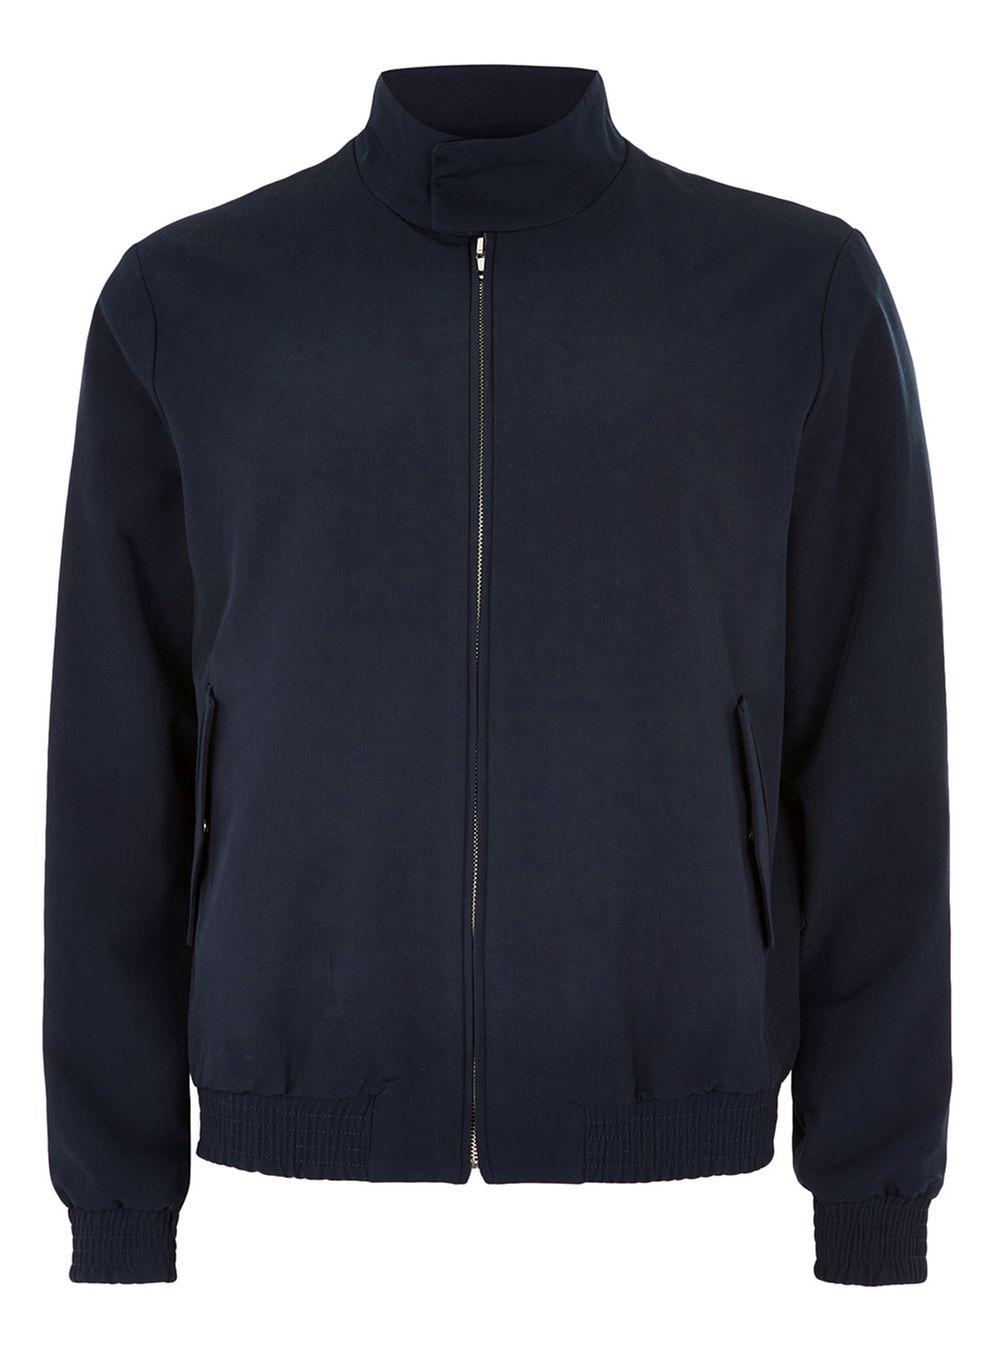 TOPMAN Synthetic Navy Smart Harrington Jacket in Blue for Men - Lyst